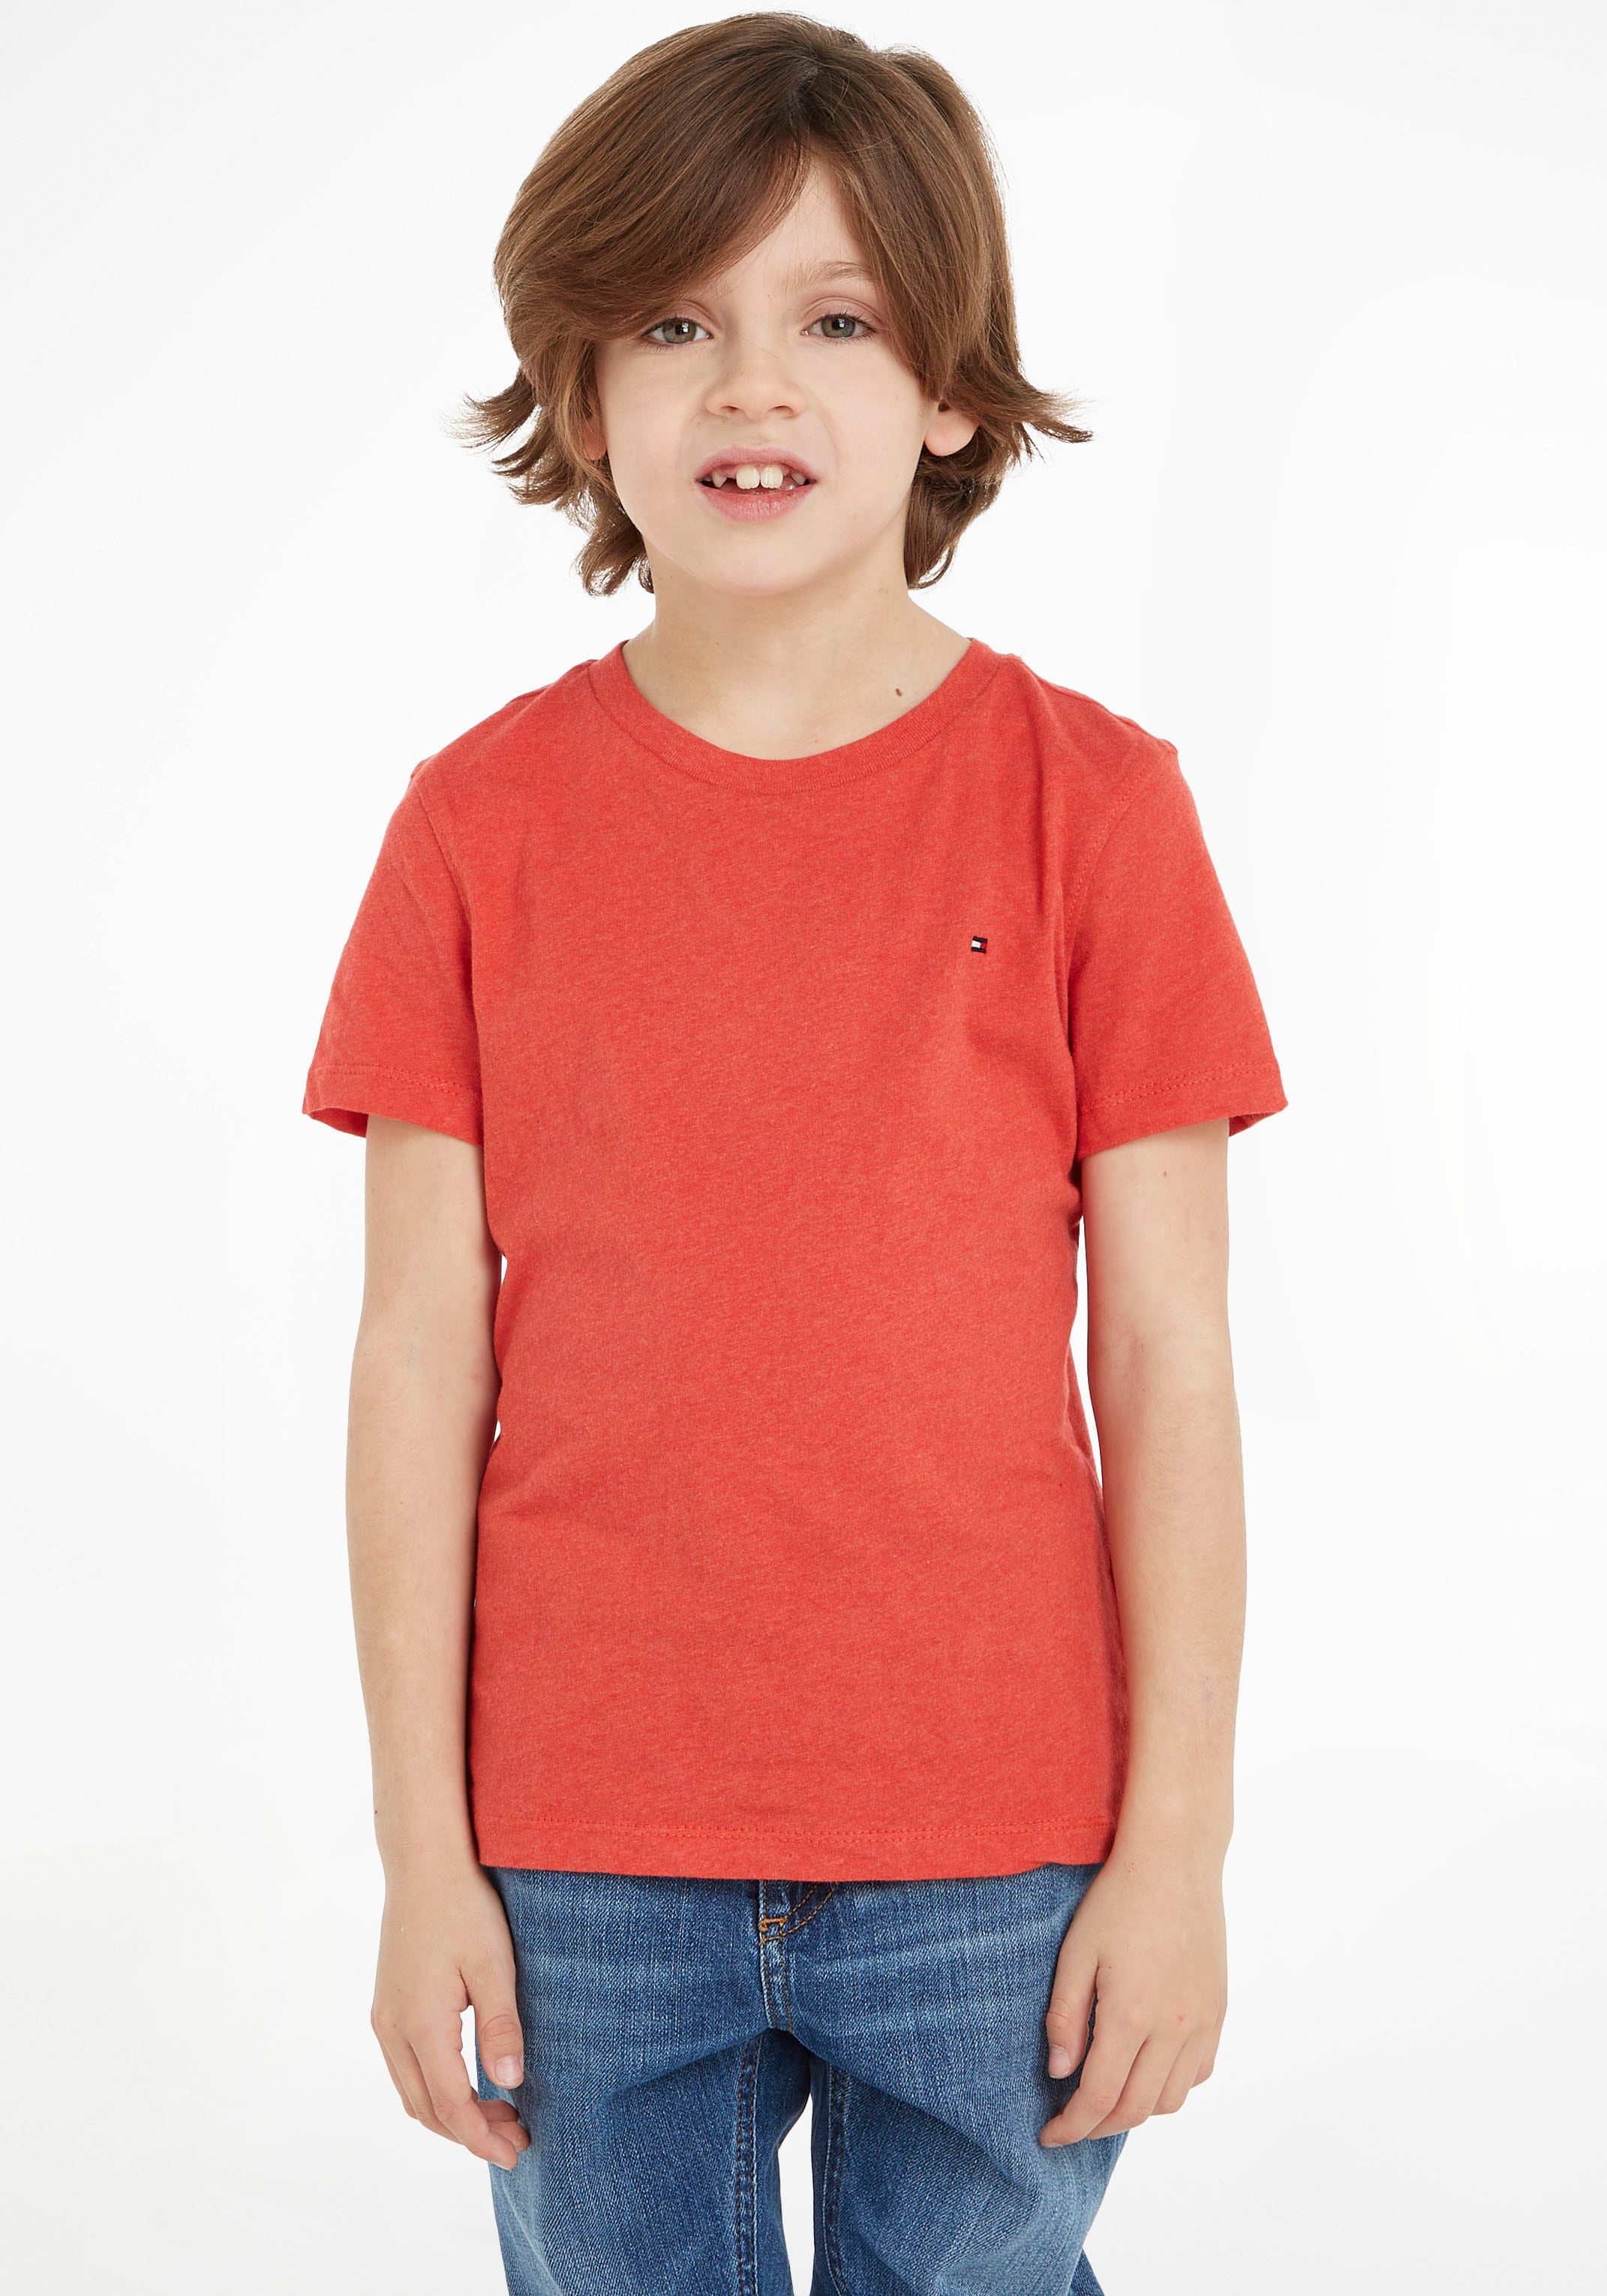 MiniMe CN BASIC KNIT«, Hilfiger Junior »BOYS Kids T-Shirt auf Kinder versandkostenfrei Tommy